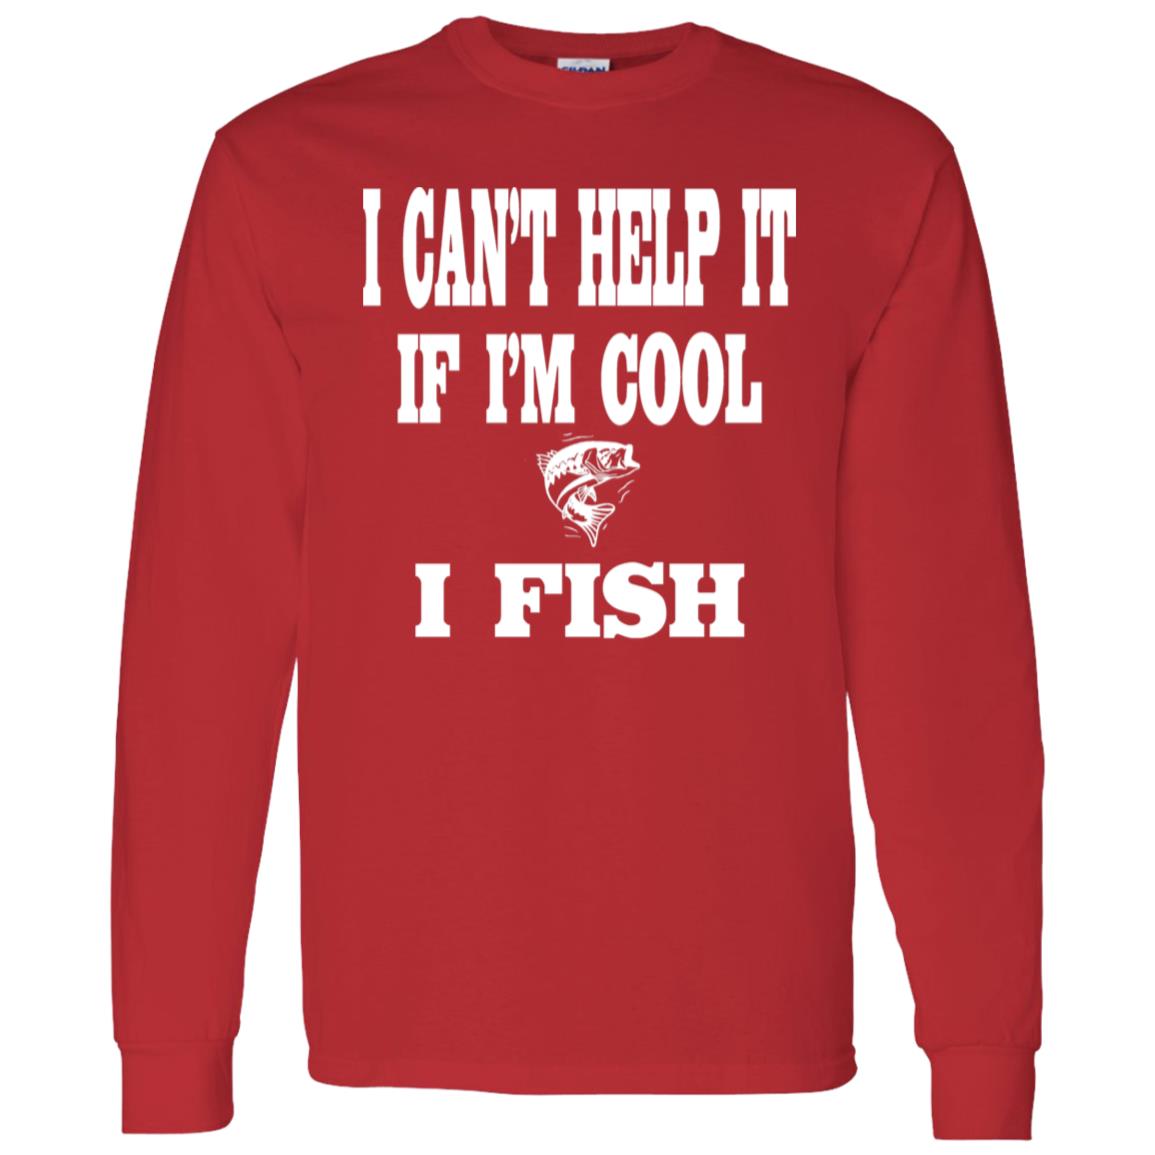 I can't help it if i'm cool i fish ls t-shirt red